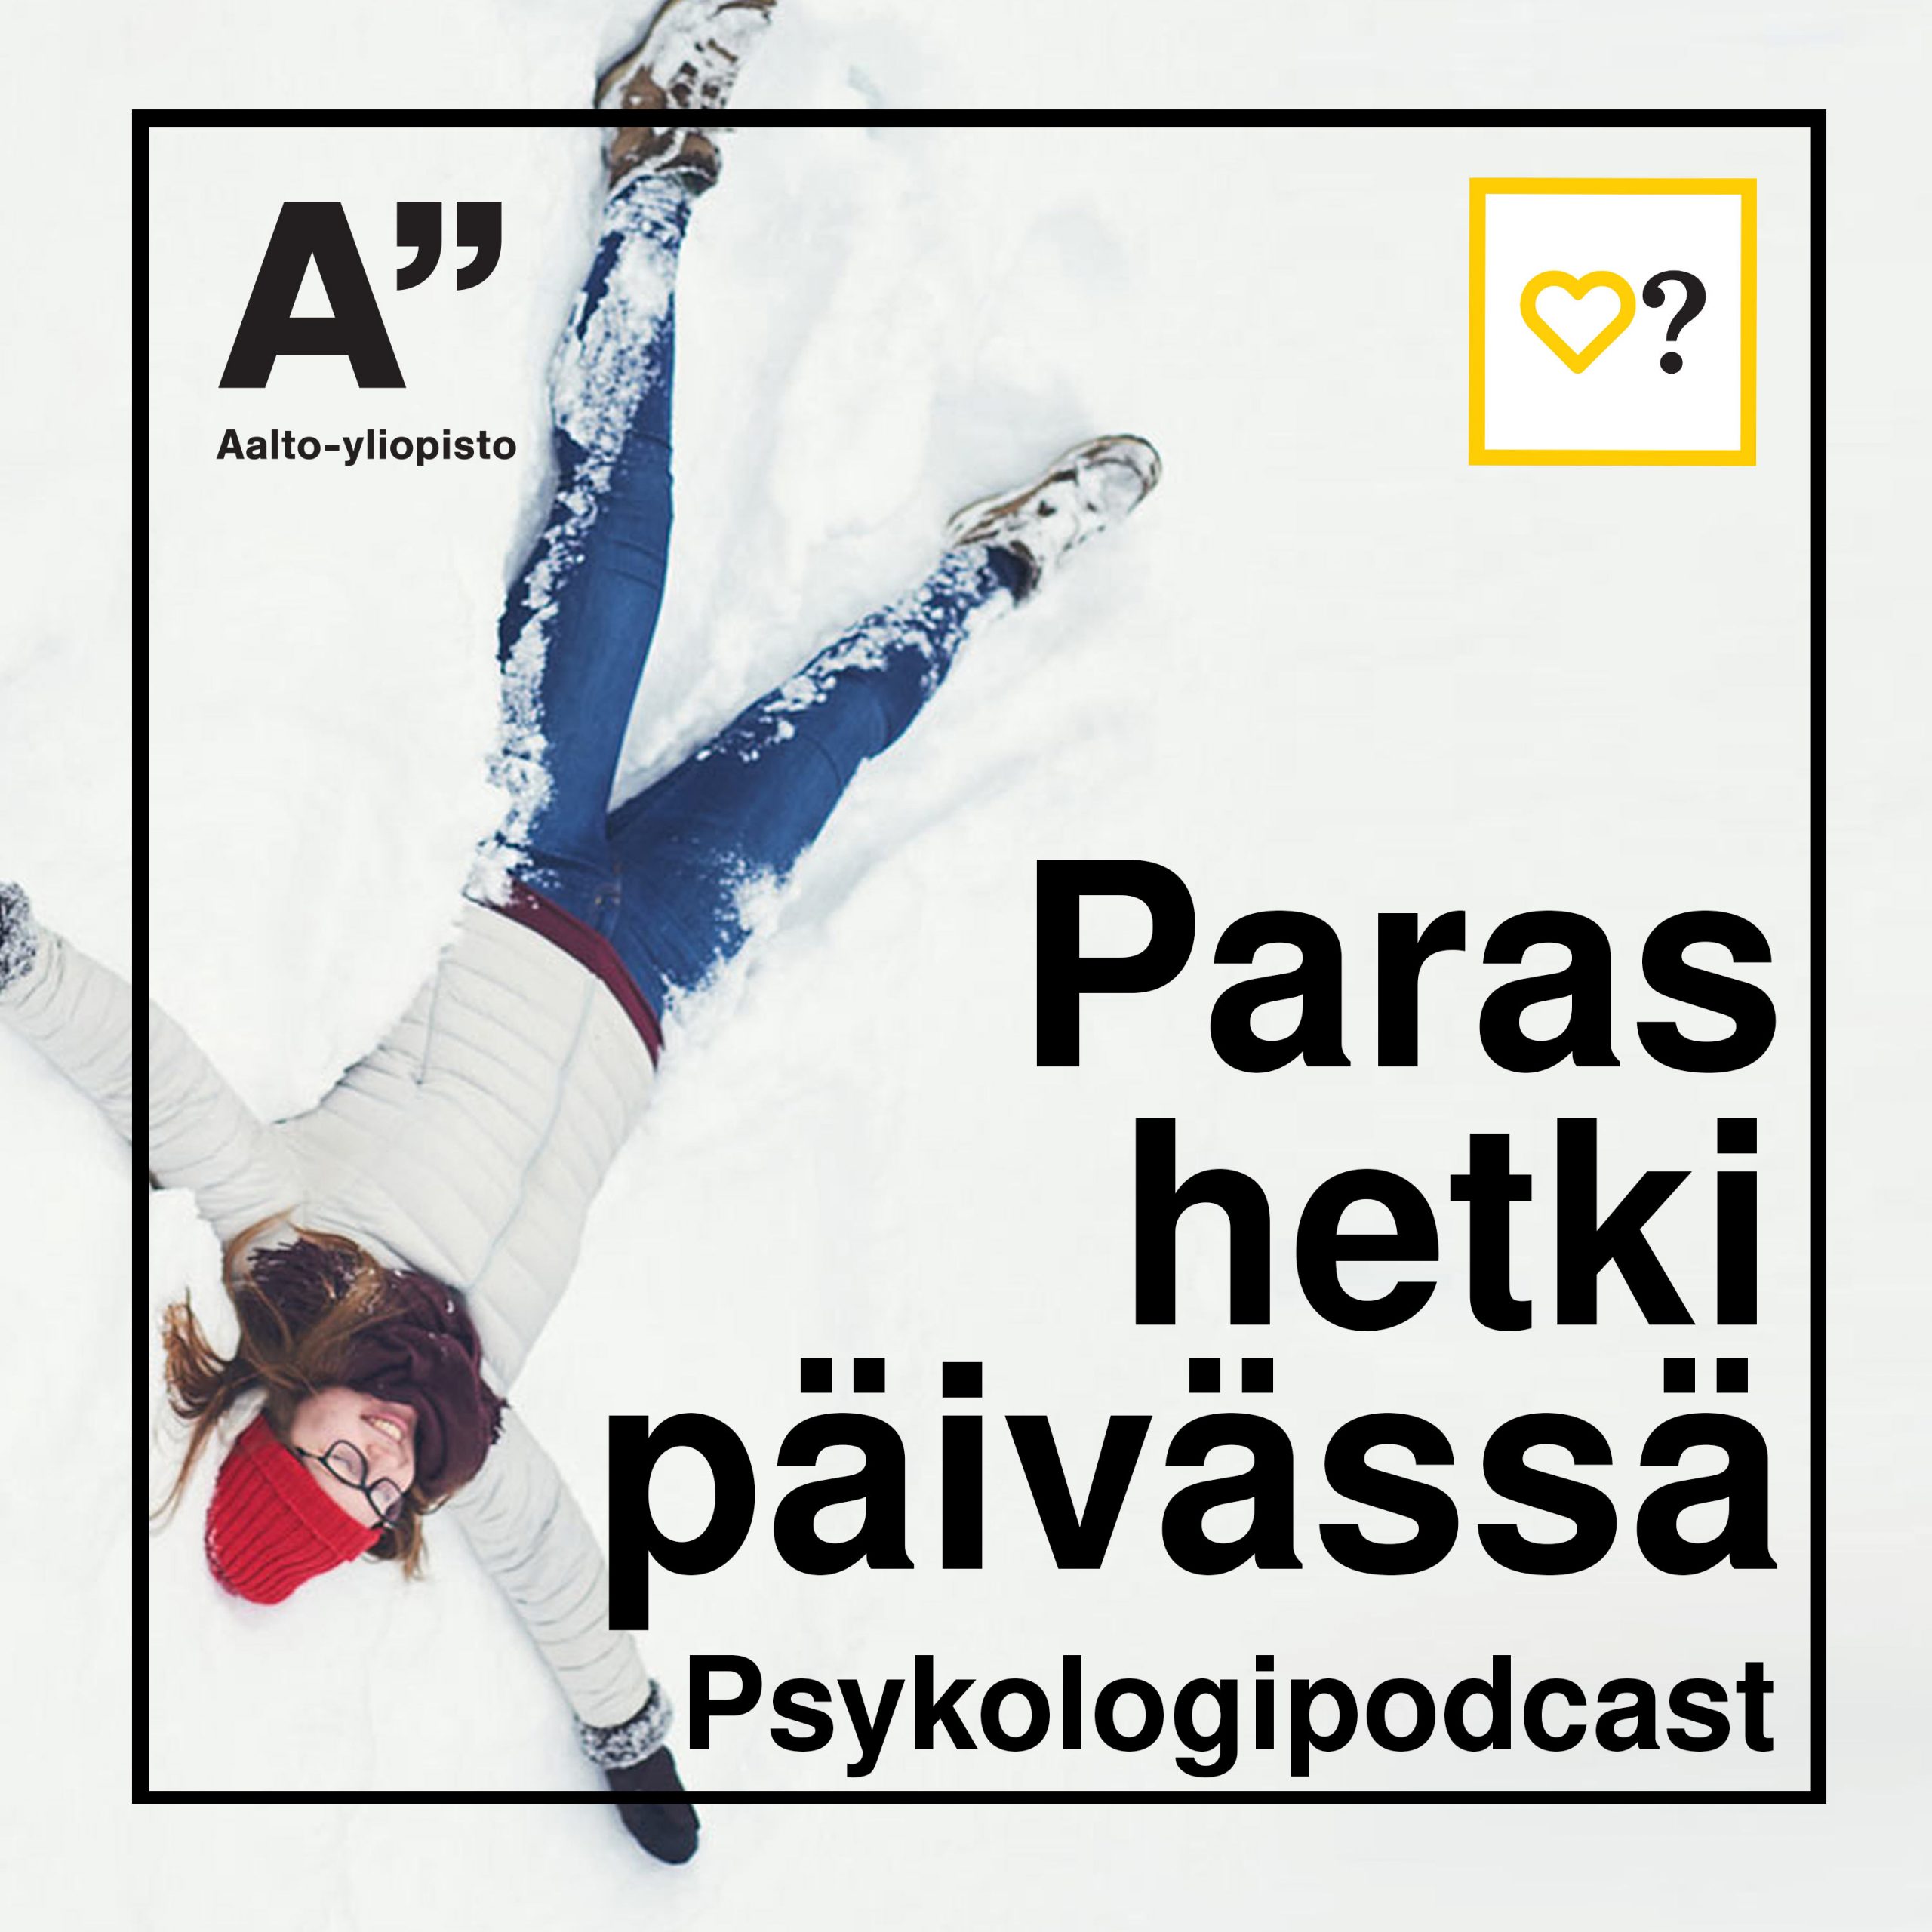 Paras hetki päivässä on Aalto-yliopiston opinto- ja uraohjauspsykologien podcast.